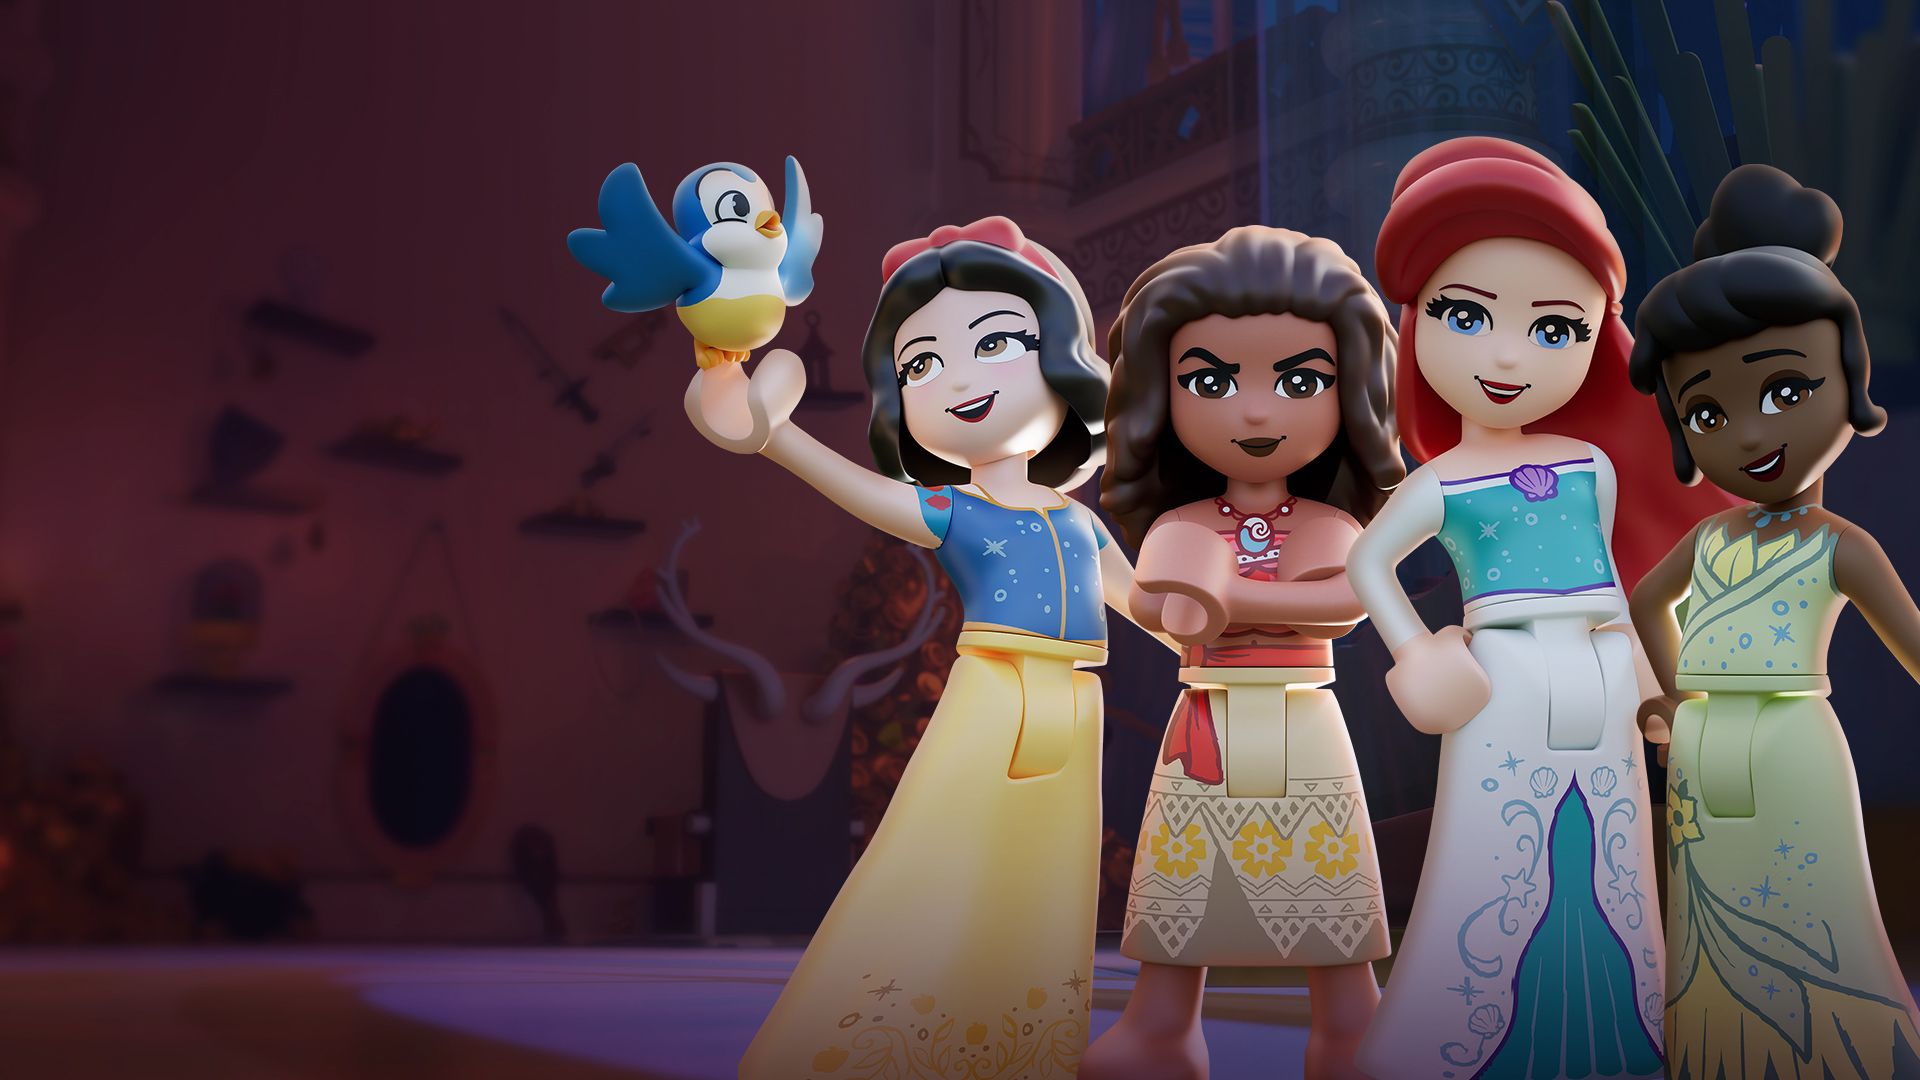 LEGO Disney Princess: The Castle Quest background